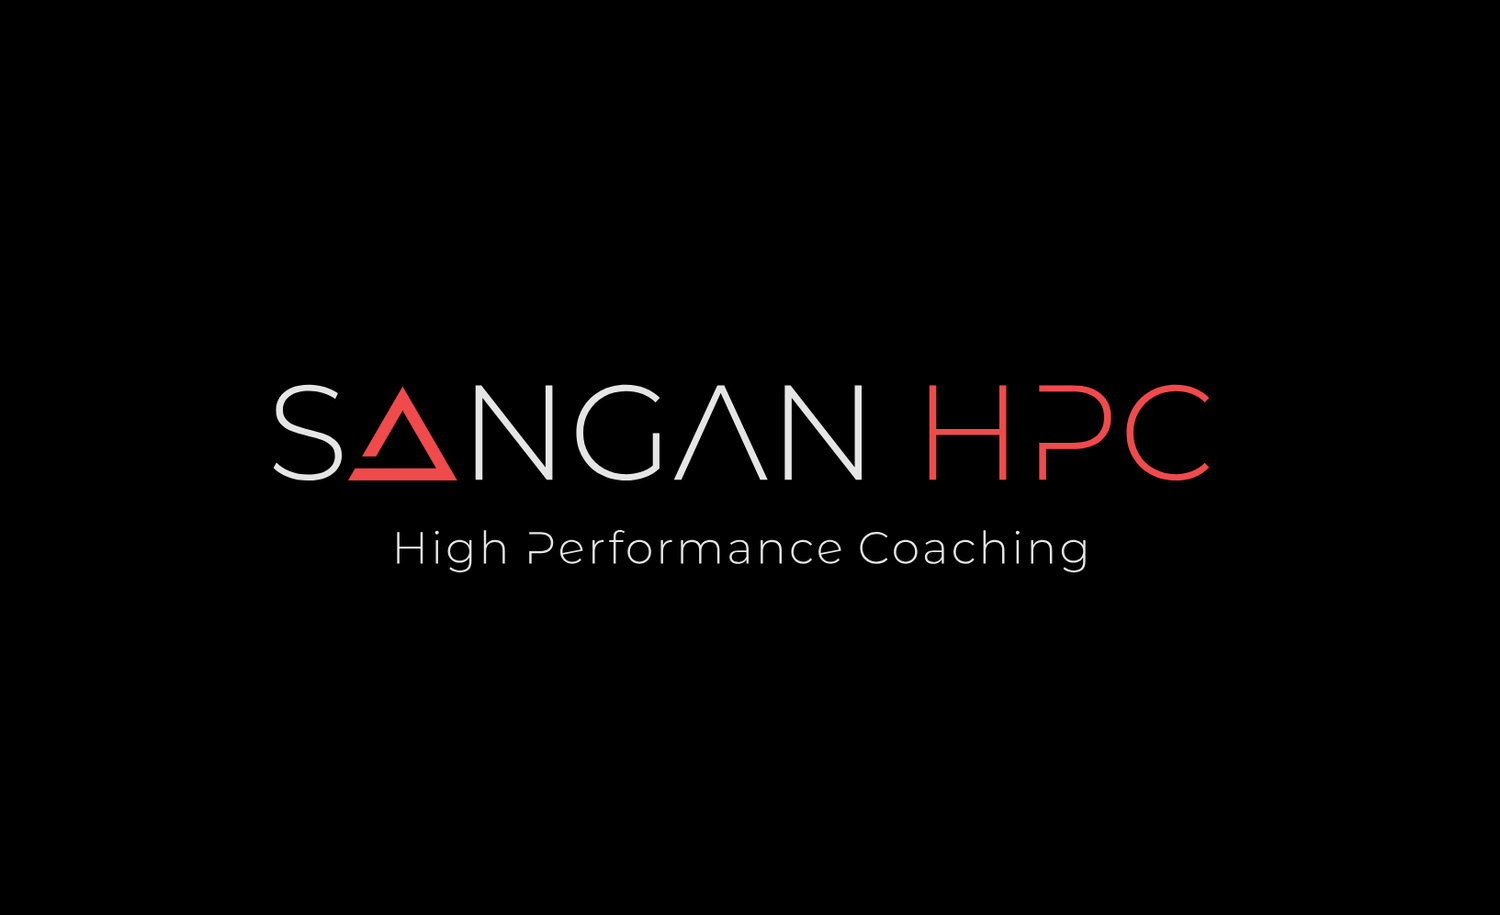 Sangan High Performance Coaching